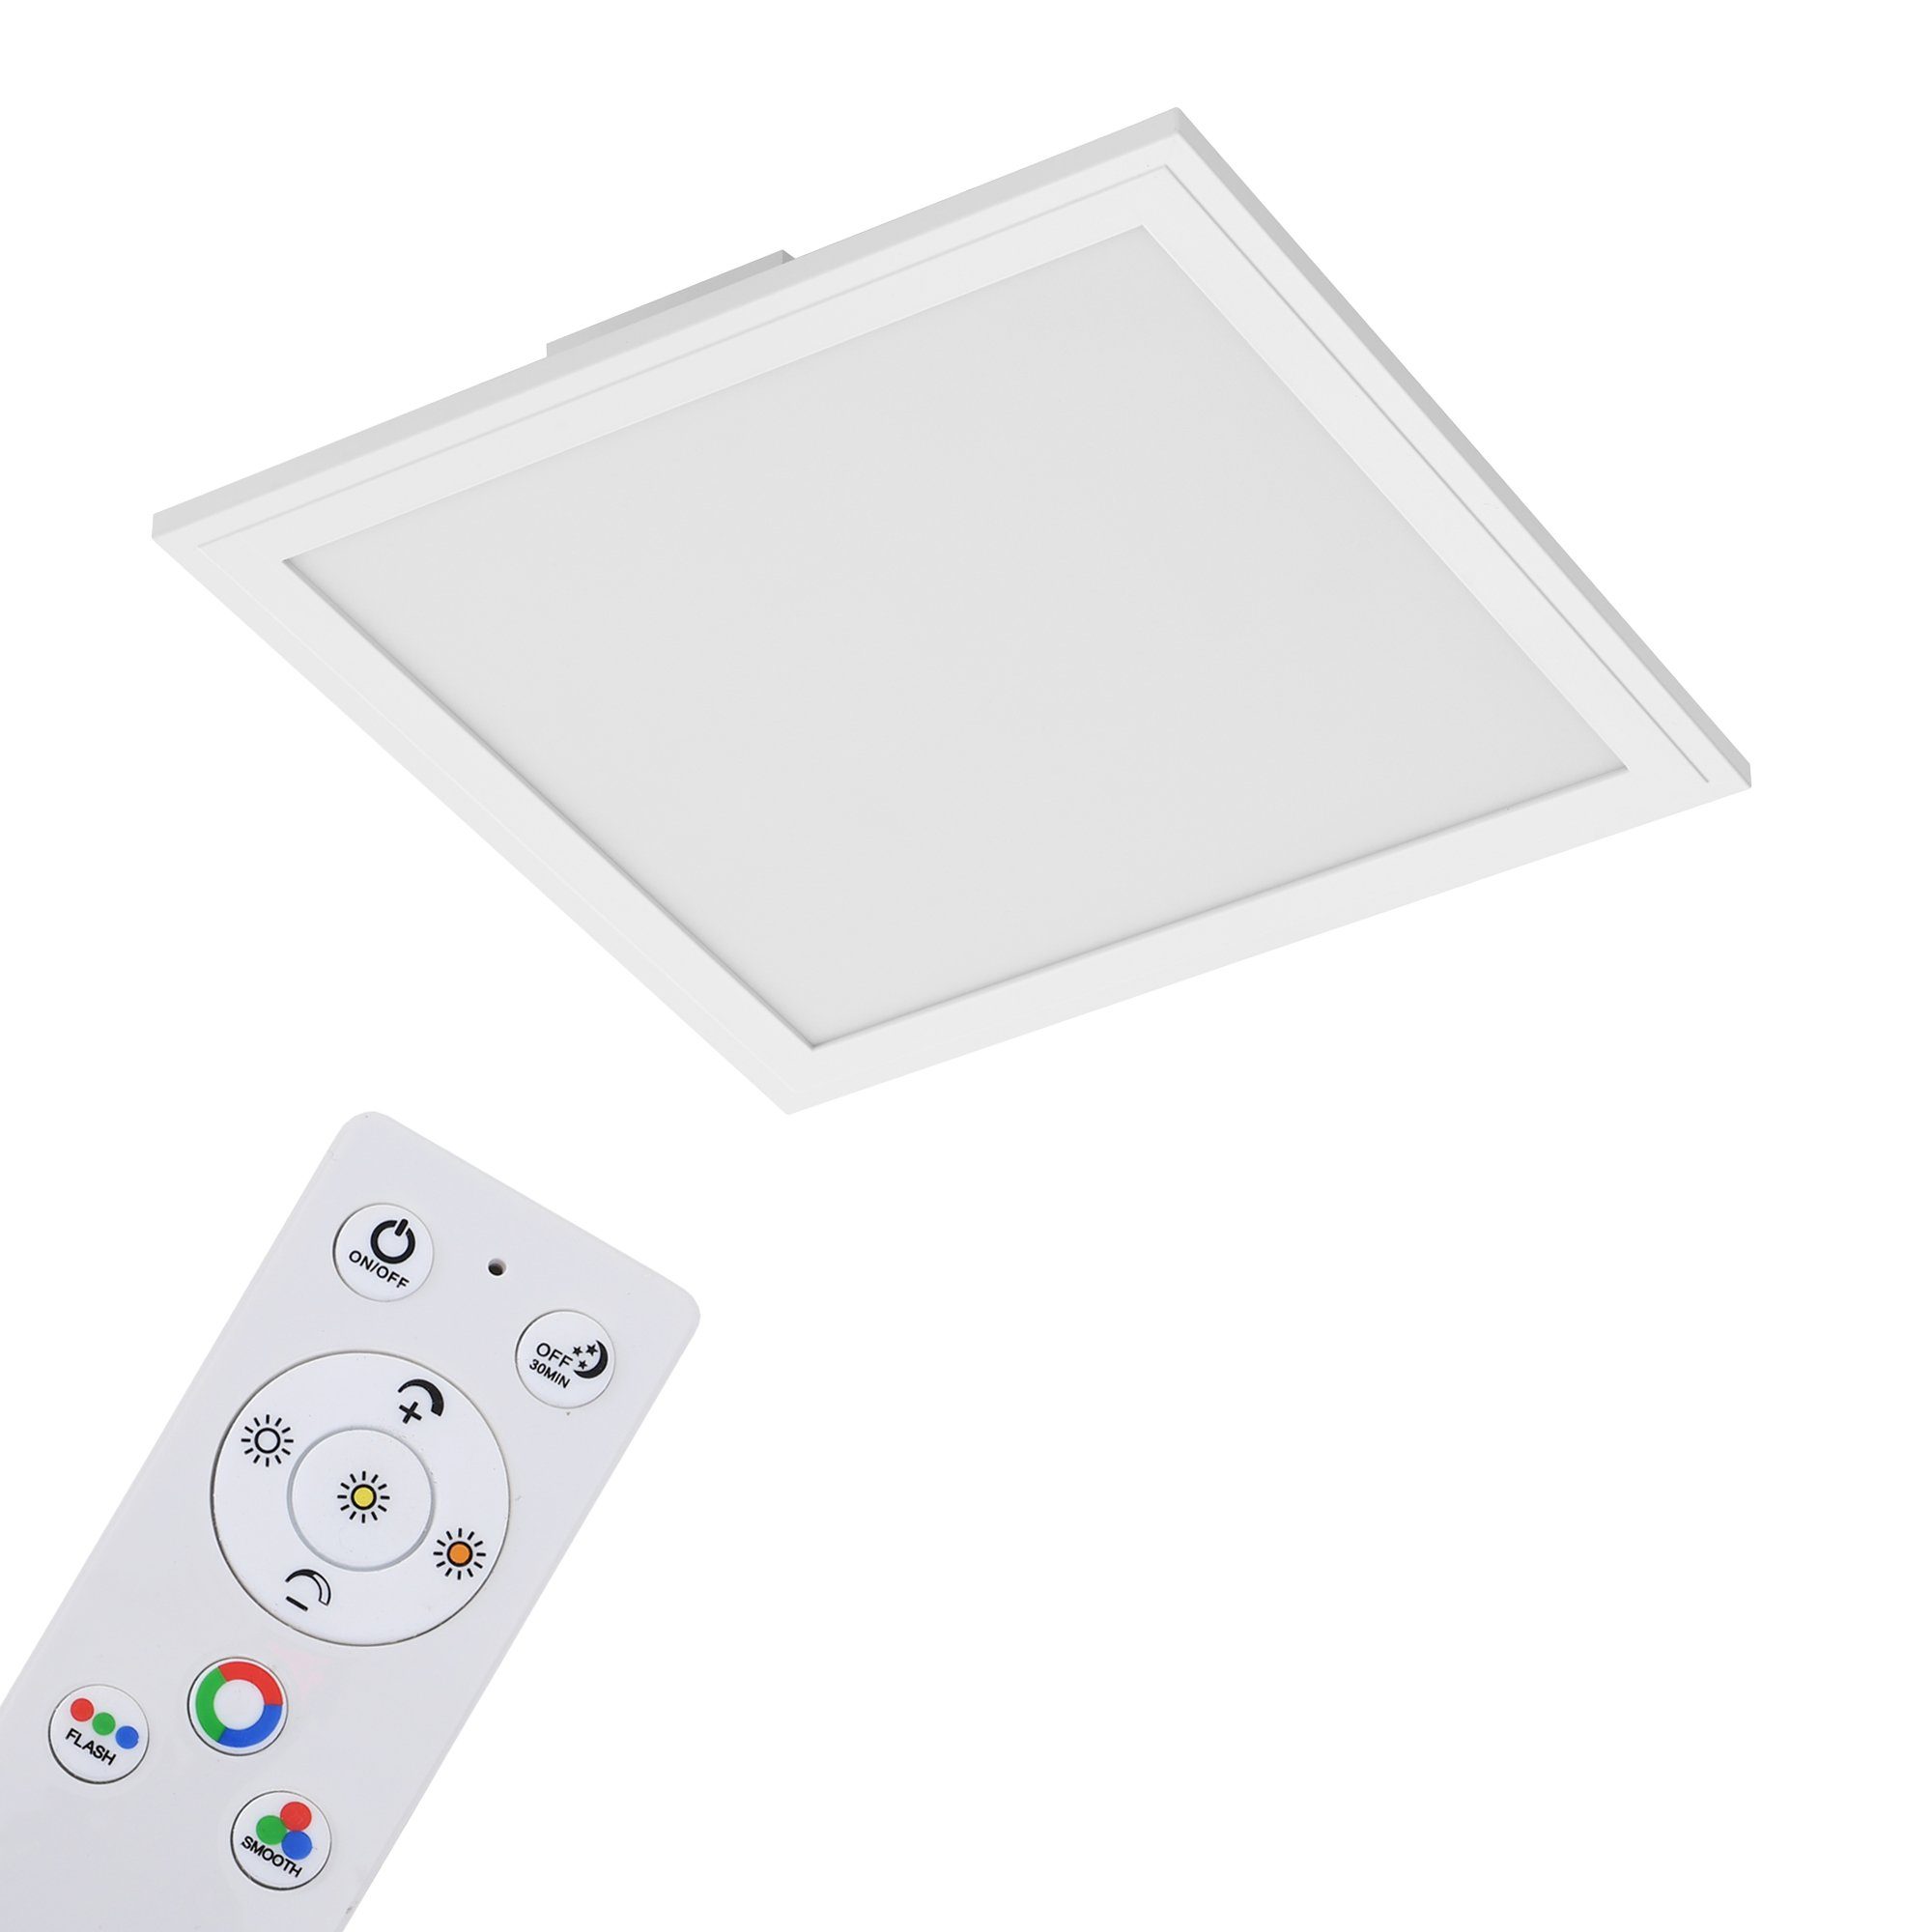 Briloner Leuchten LED Panel »7151-016«, CCT-Farbtemperatursteuerung,  RGB-Beleuchtung, Dimmbar über Fernbedienung, Nachtlichtfunktion, inkl.  Fernbedienung, weiß, LED, 29,5 x 29,5 x 5 cm